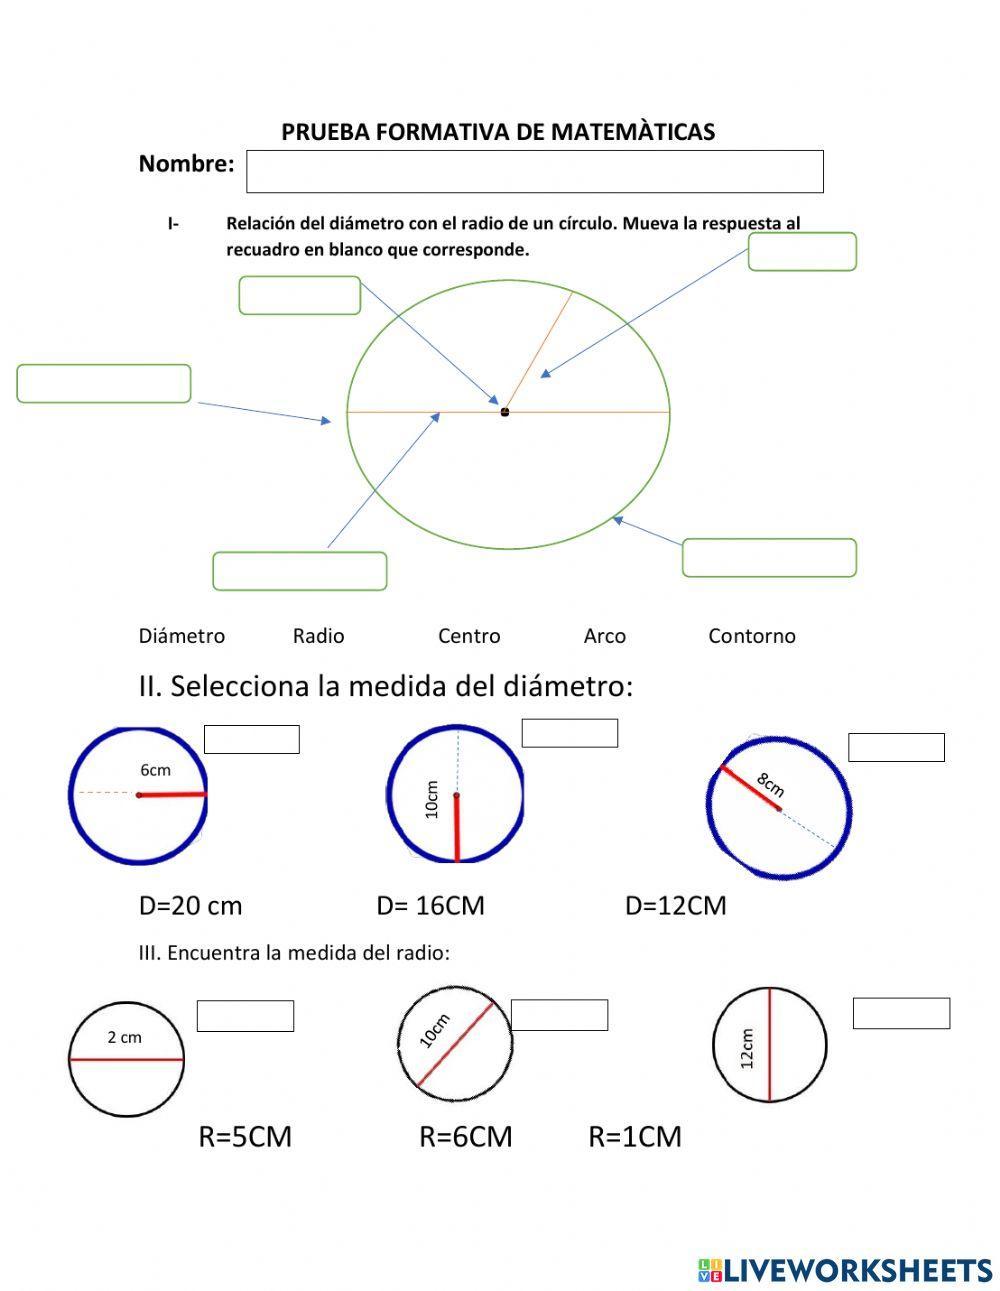 Relaciòn del diametro con el radio de un circulo worksheet | Live ...